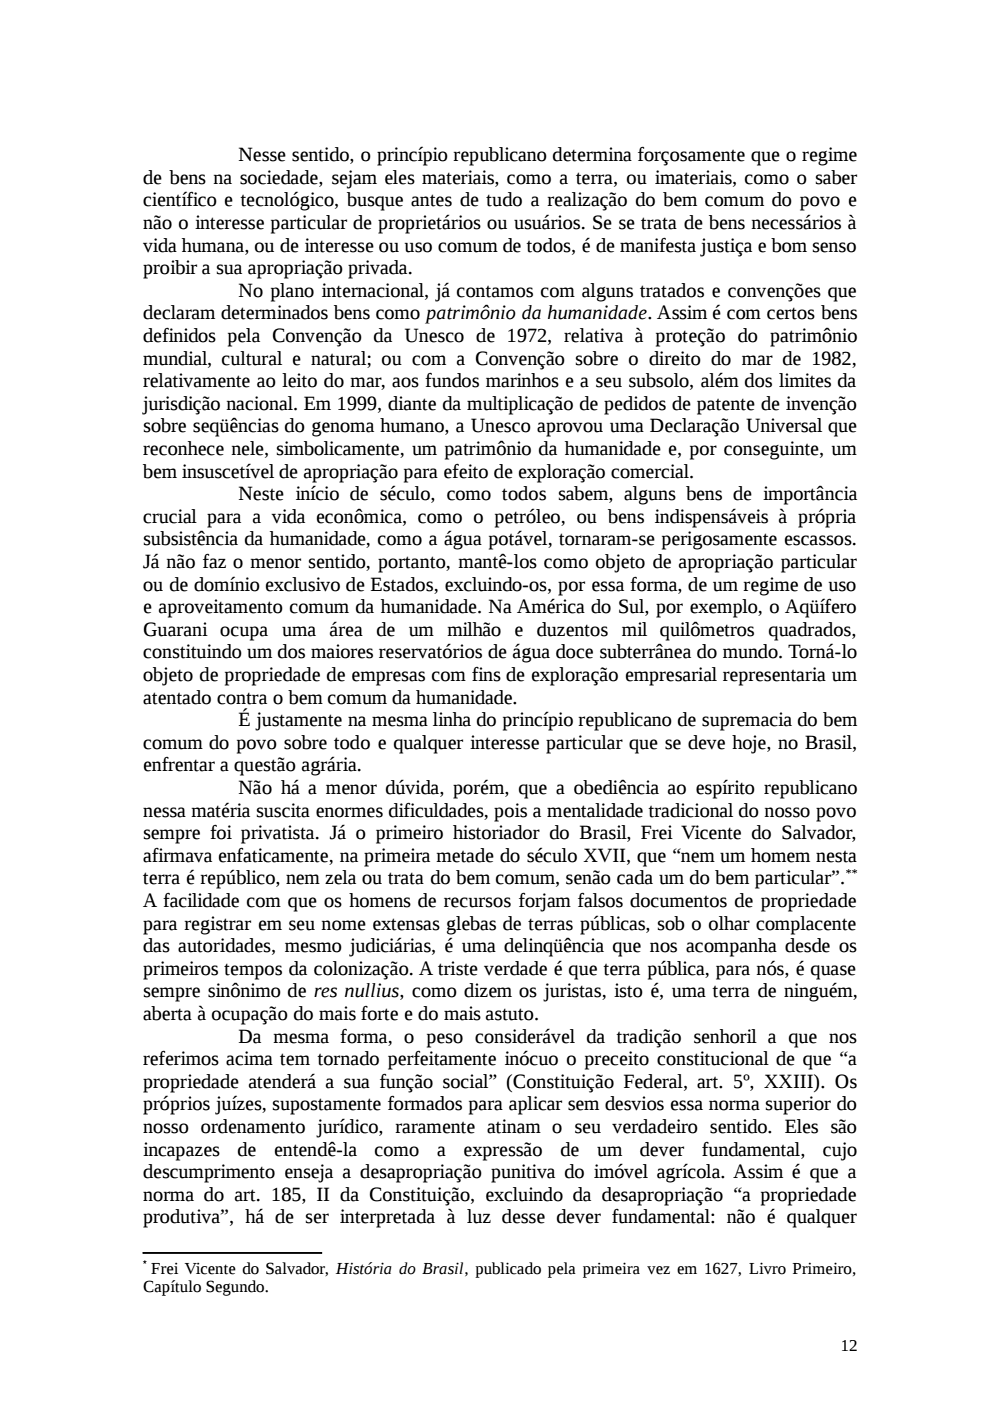 Page 12 from Relatório final da comissão